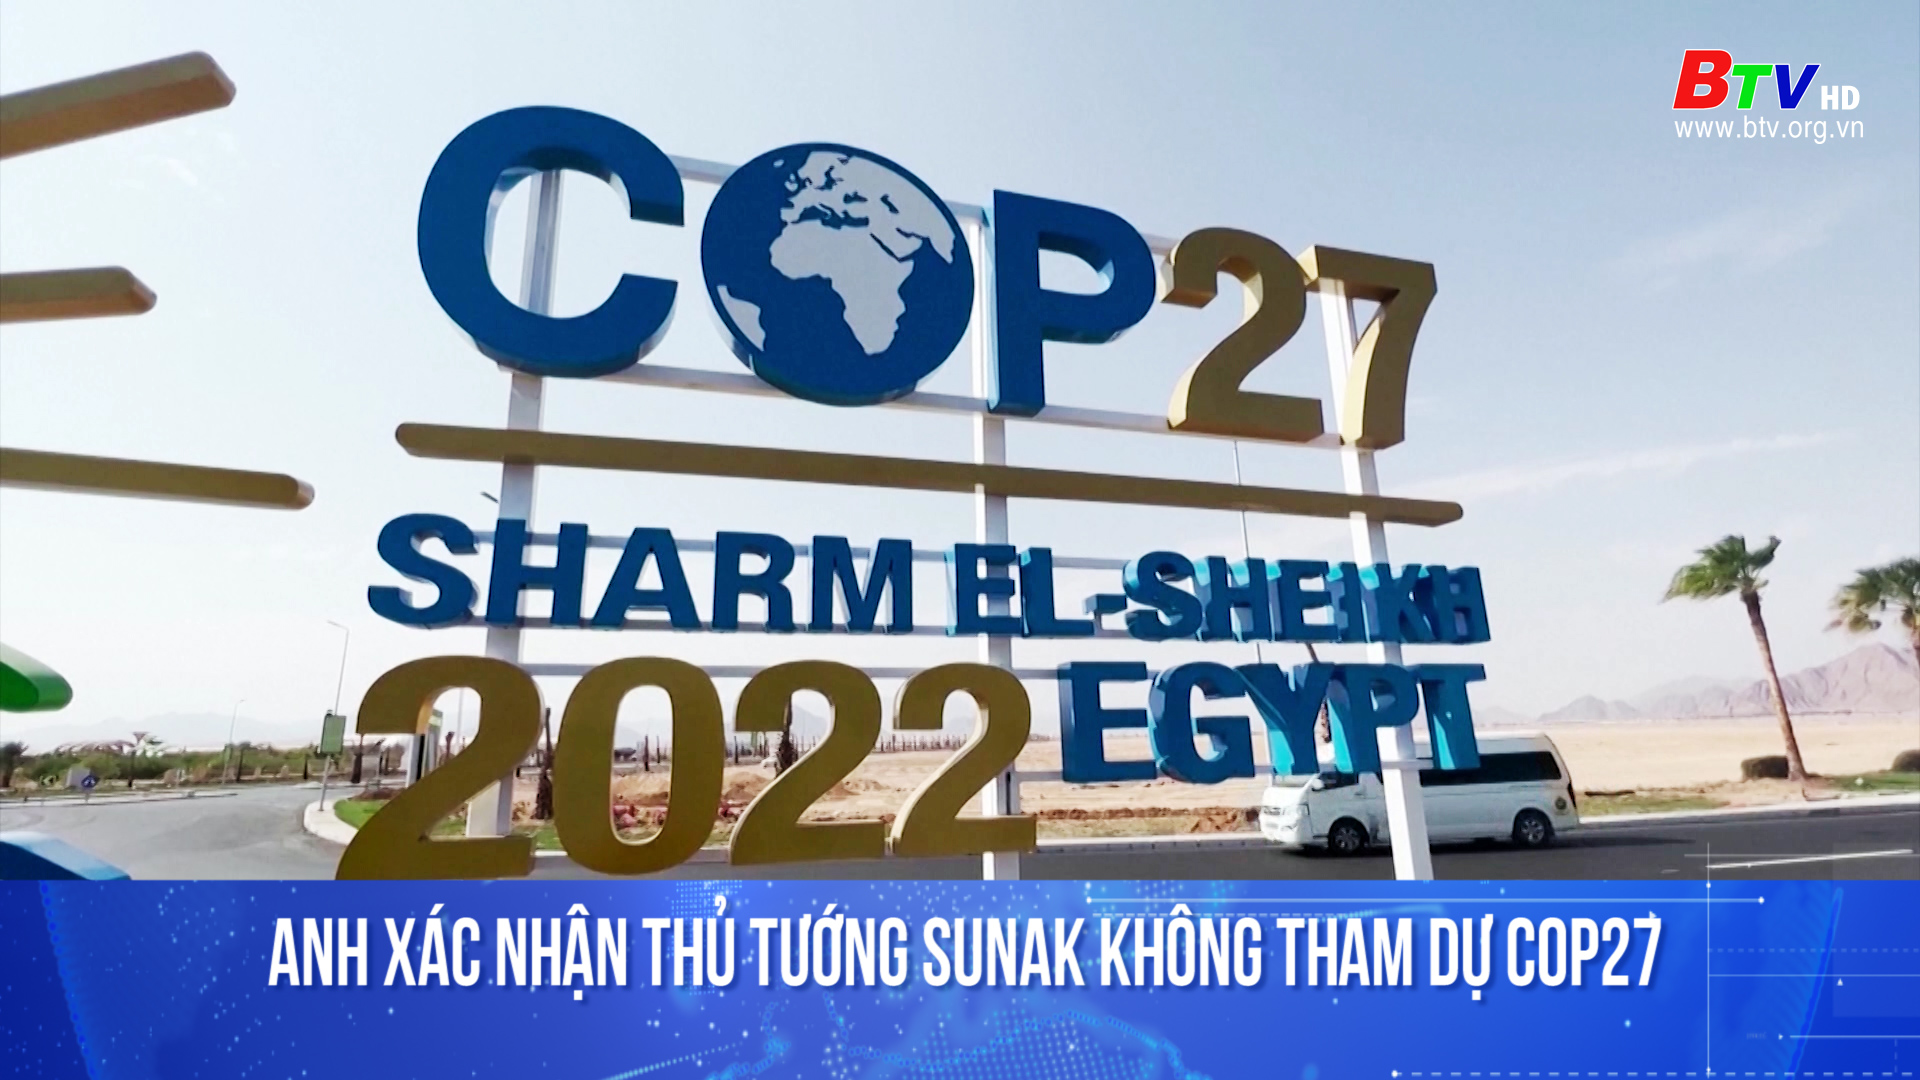 Anh xác nhận Thủ tướng Sunak không tham dự Cop27